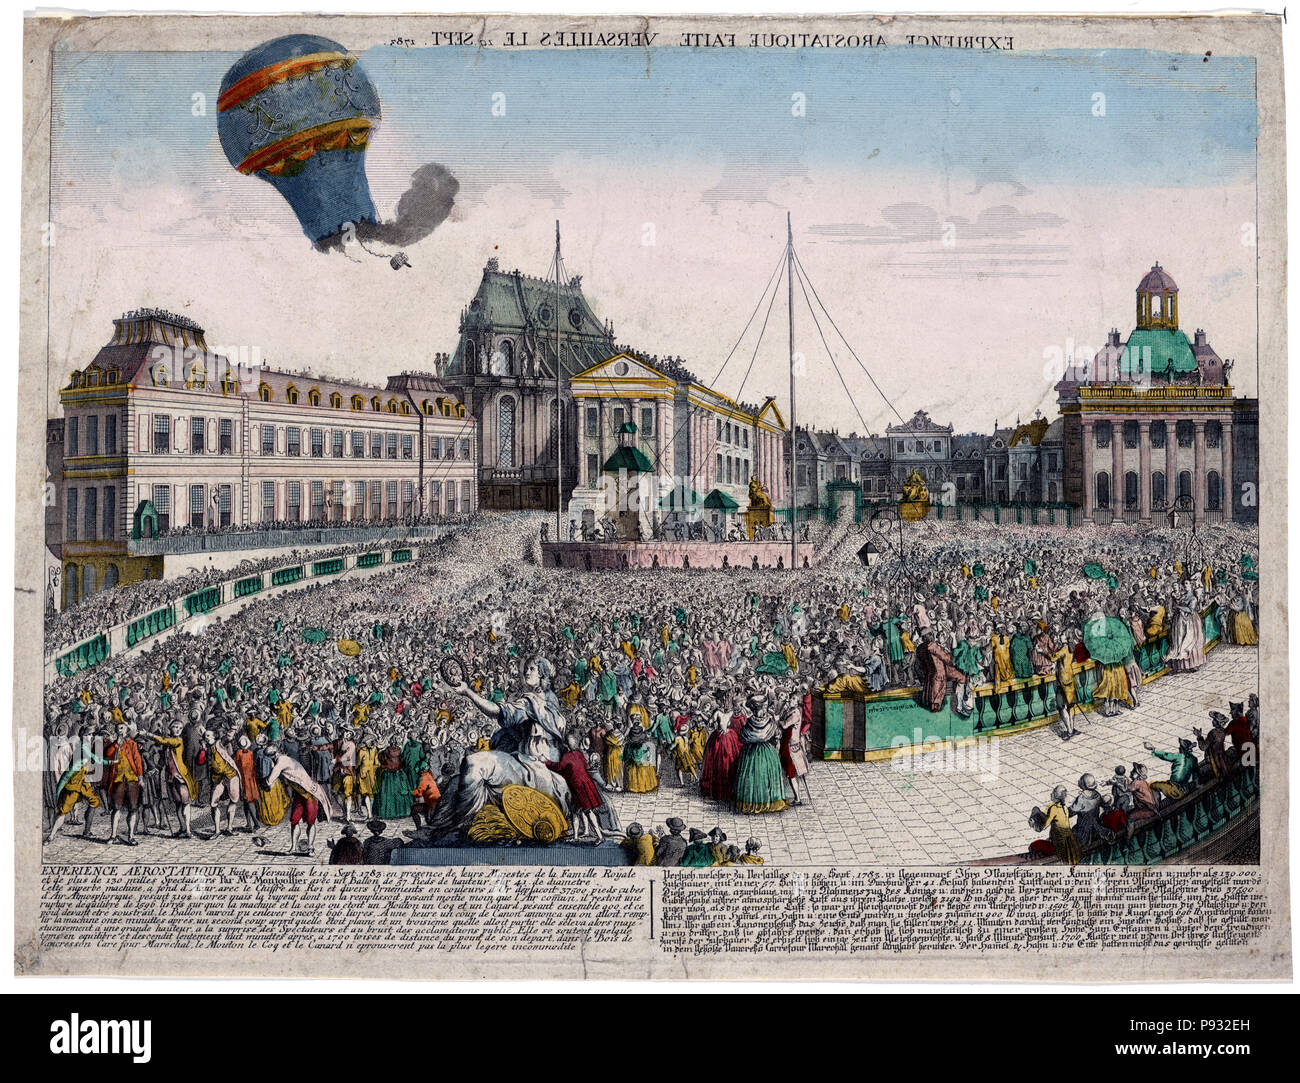 Vue d'optique zeigt den Ballon von der Brüder Montgolfier aufsteigend vom Palast von Versailles, Frankreich, vor der königlichen Familie, 19. September 1783. Stockfoto